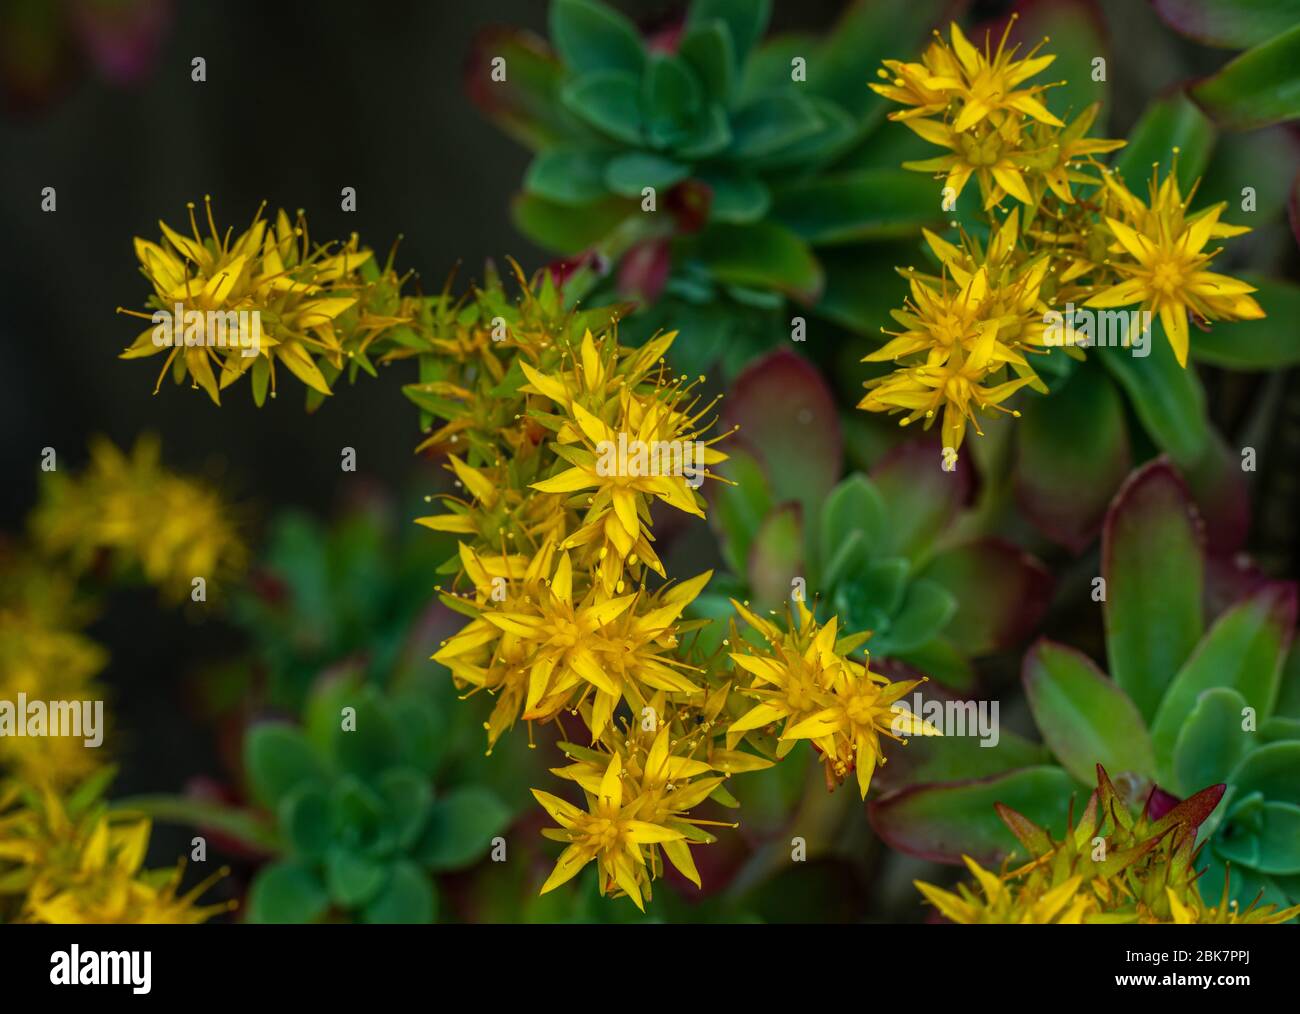 flowering of Sedum palmeri Stock Photo